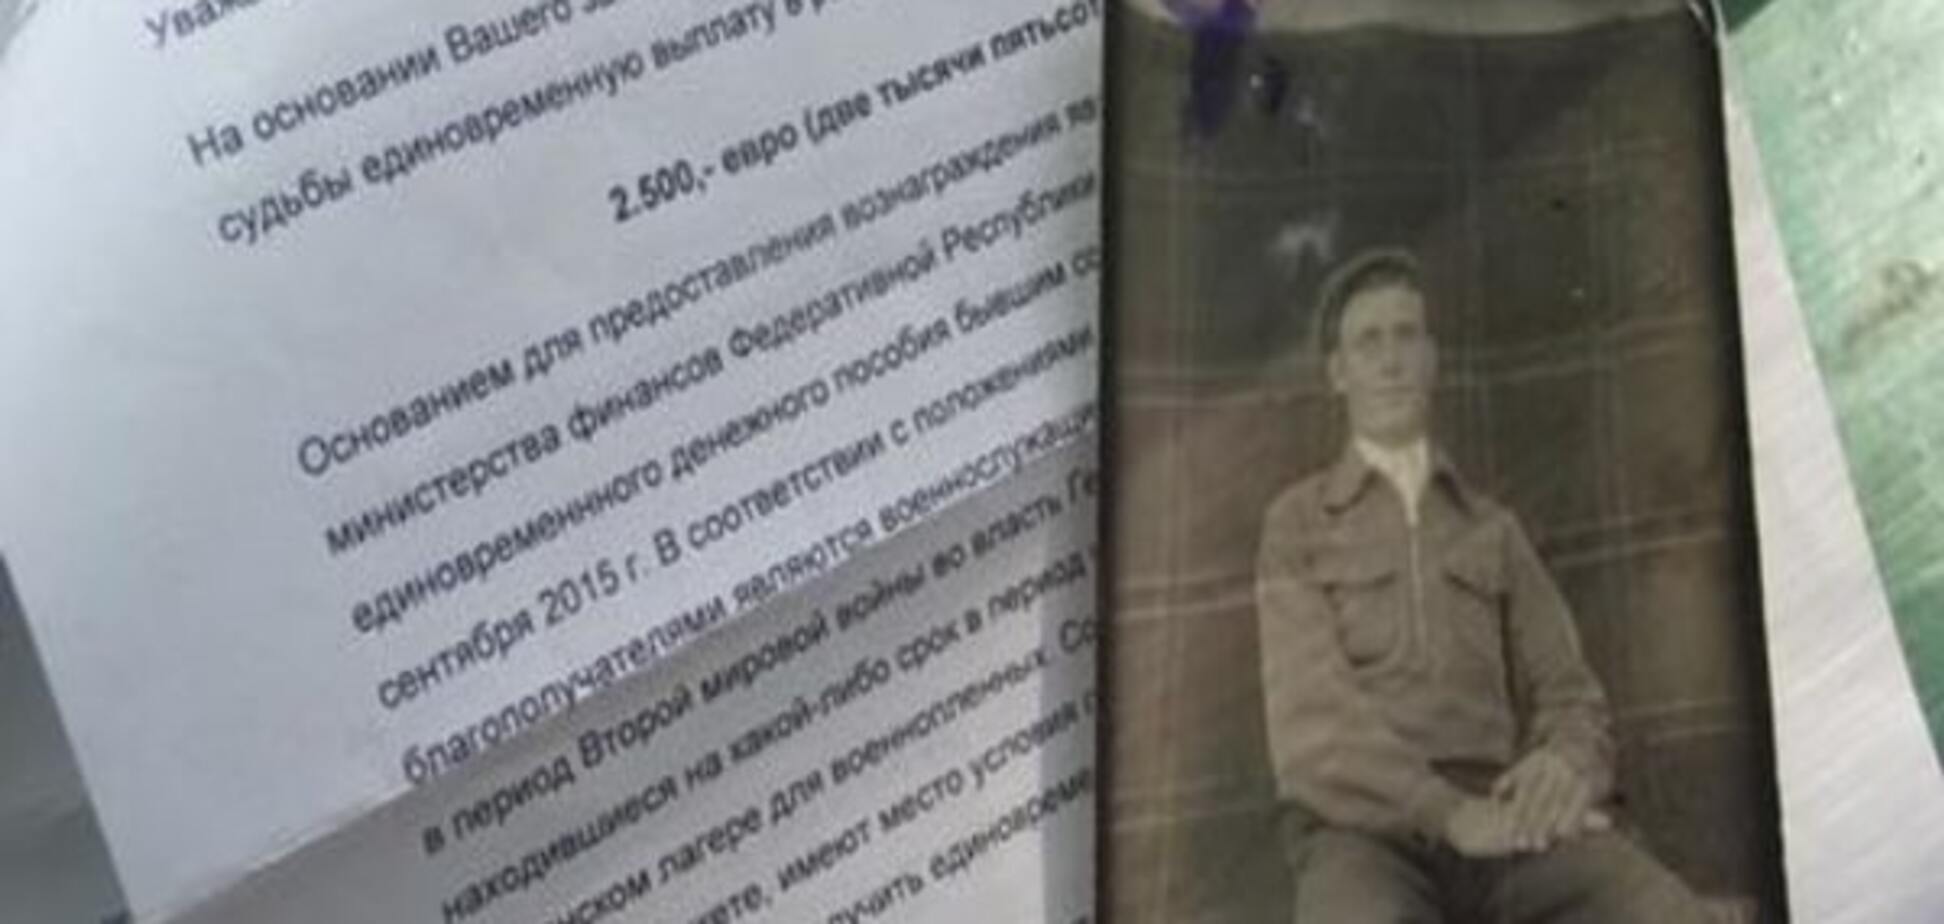 'Не забыли': ветеран из Днепропетровска спустя 70 лет получил компенсацию от Германии